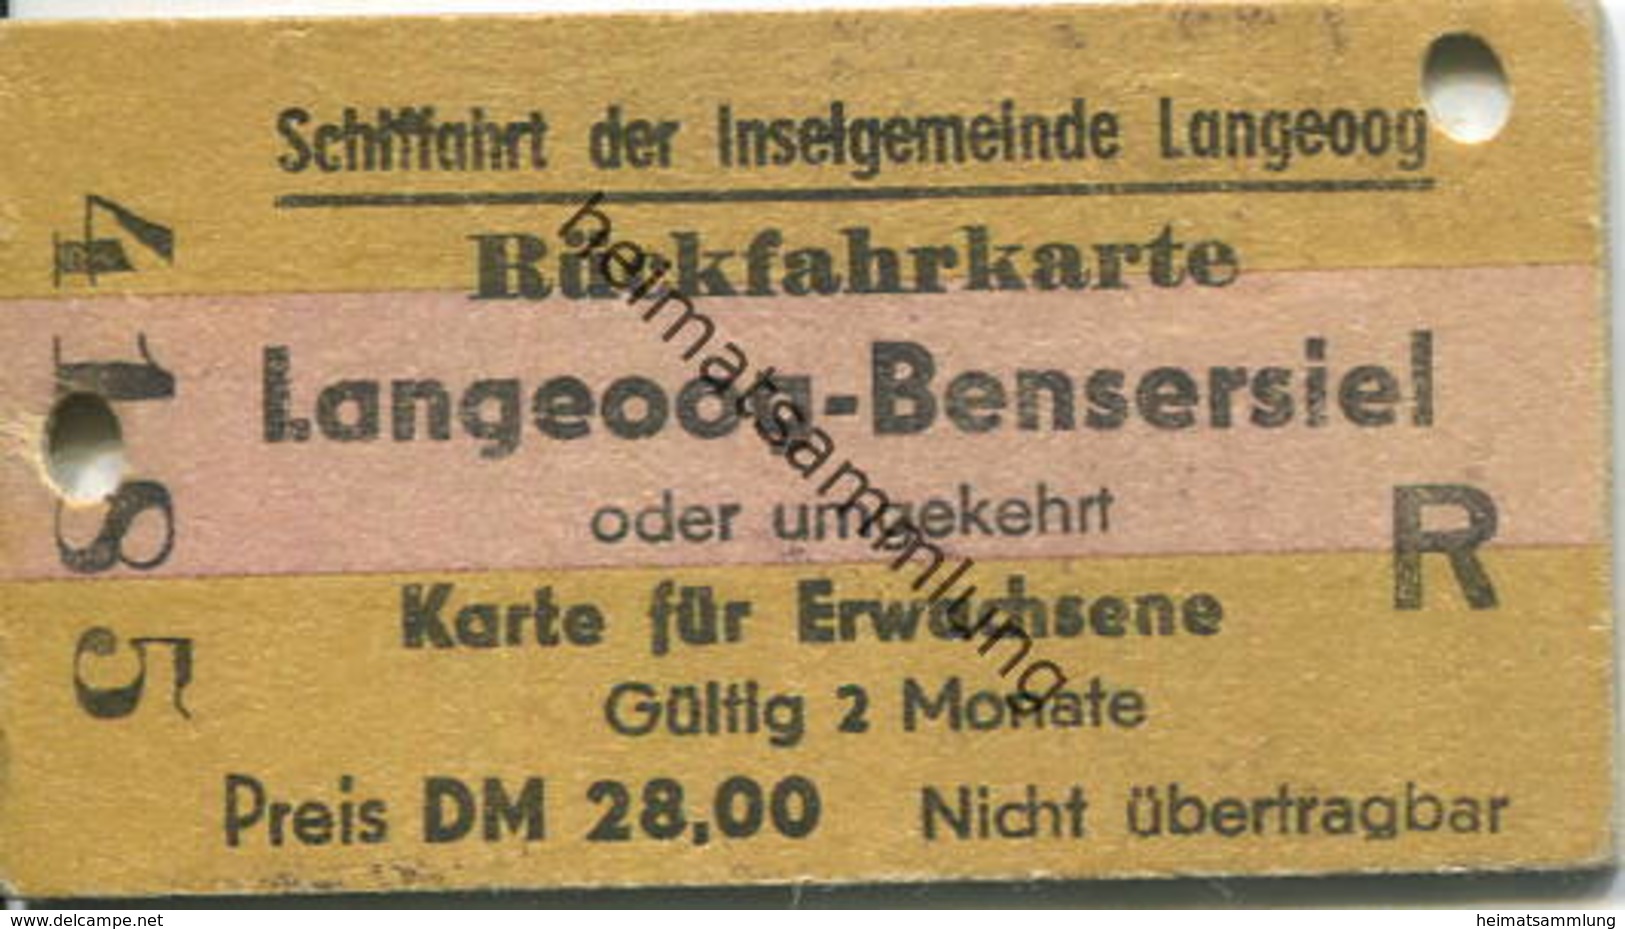 Deutschland - Schiffahrt Der Inselgemeinde Langeoog - Rückfahrkarte Langeoog-Bensersiel - Fahrkarte 1978 - Europa